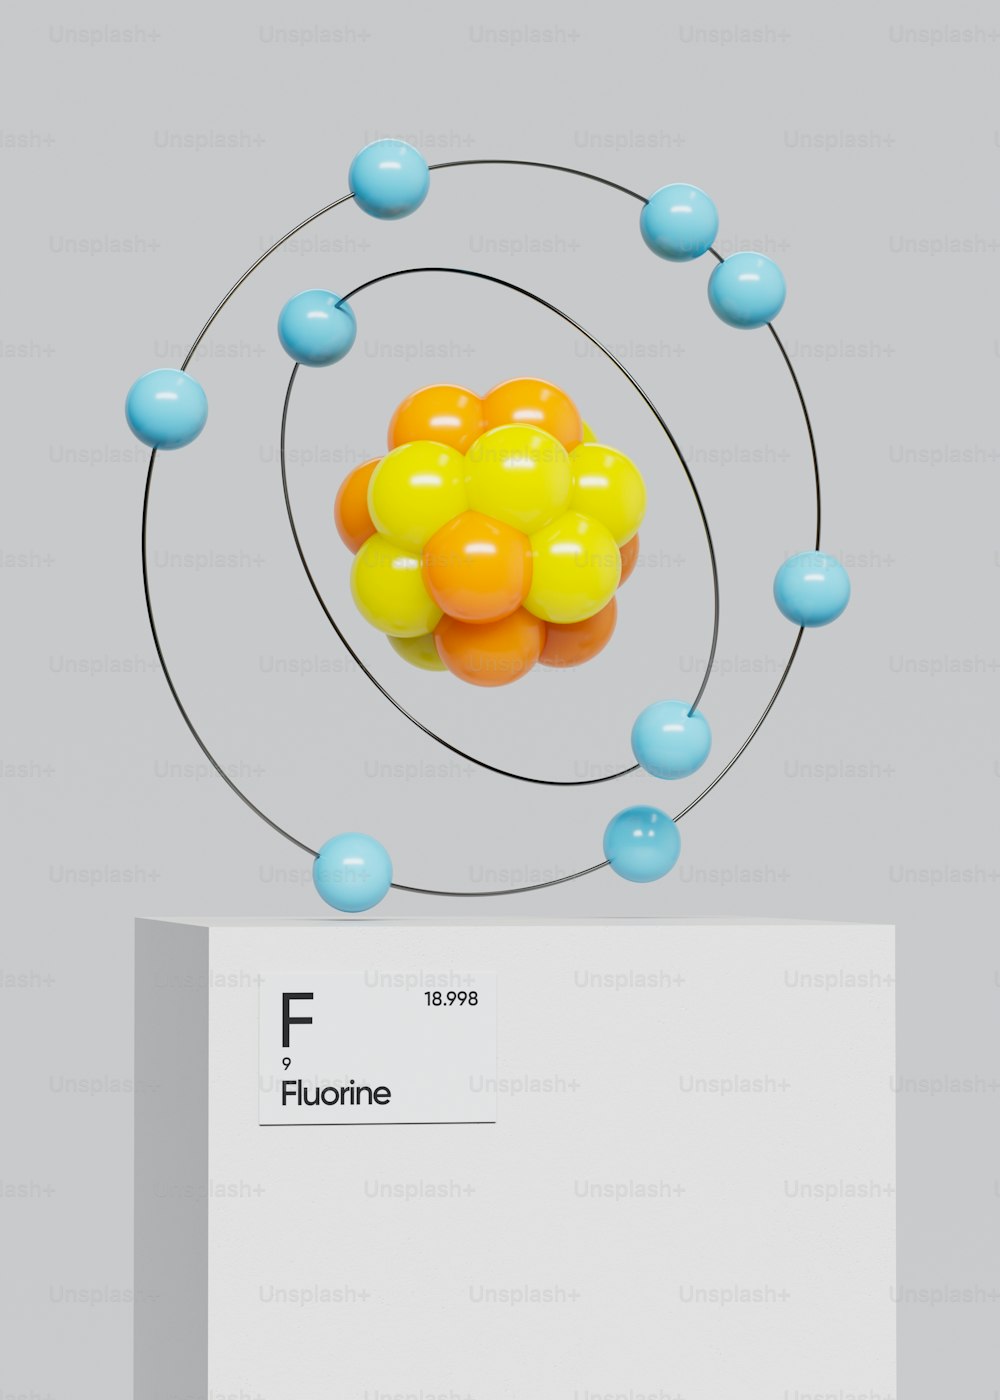 un'immagine di un modello della struttura di una sostanza